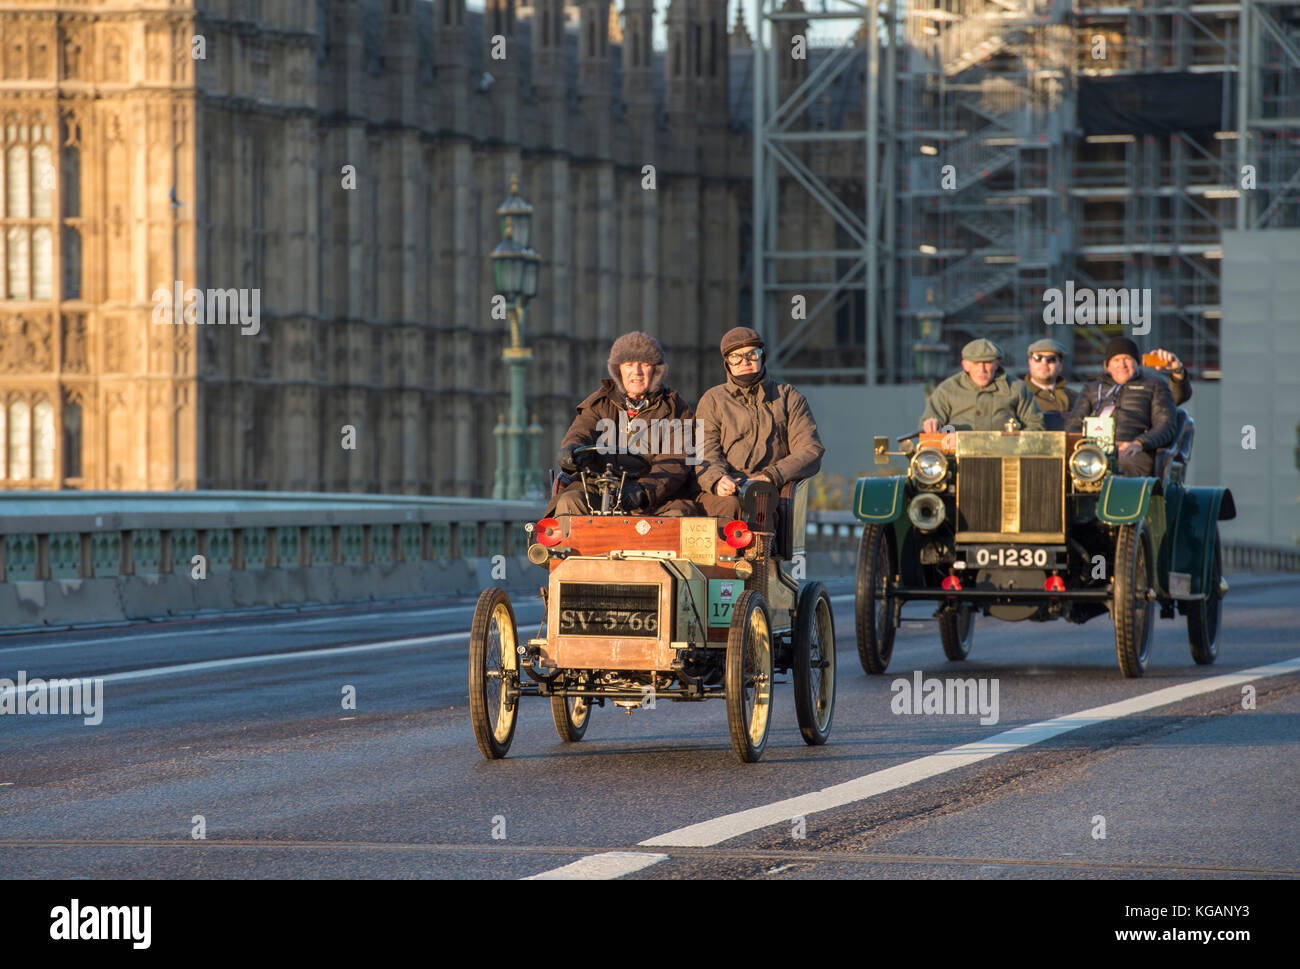 5 novembre 2017. Bonhams de Londres à Brighton, la course de voiture de vétéran, la plus longue course automobile au monde, 1903 Humberette sur le pont de Westminster. Banque D'Images